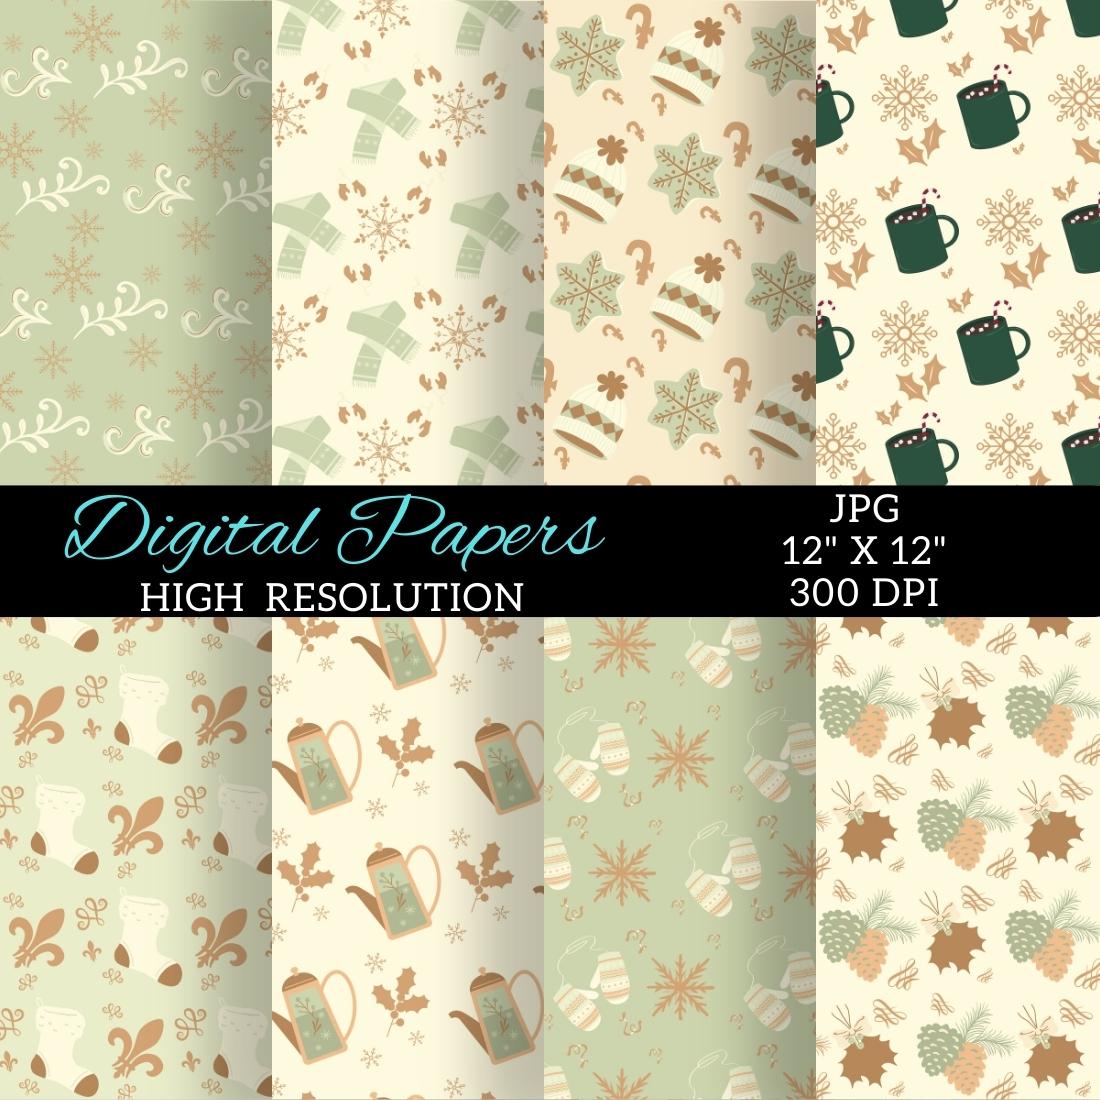 Boho Winter Digital Paper Patterns Design cover image.